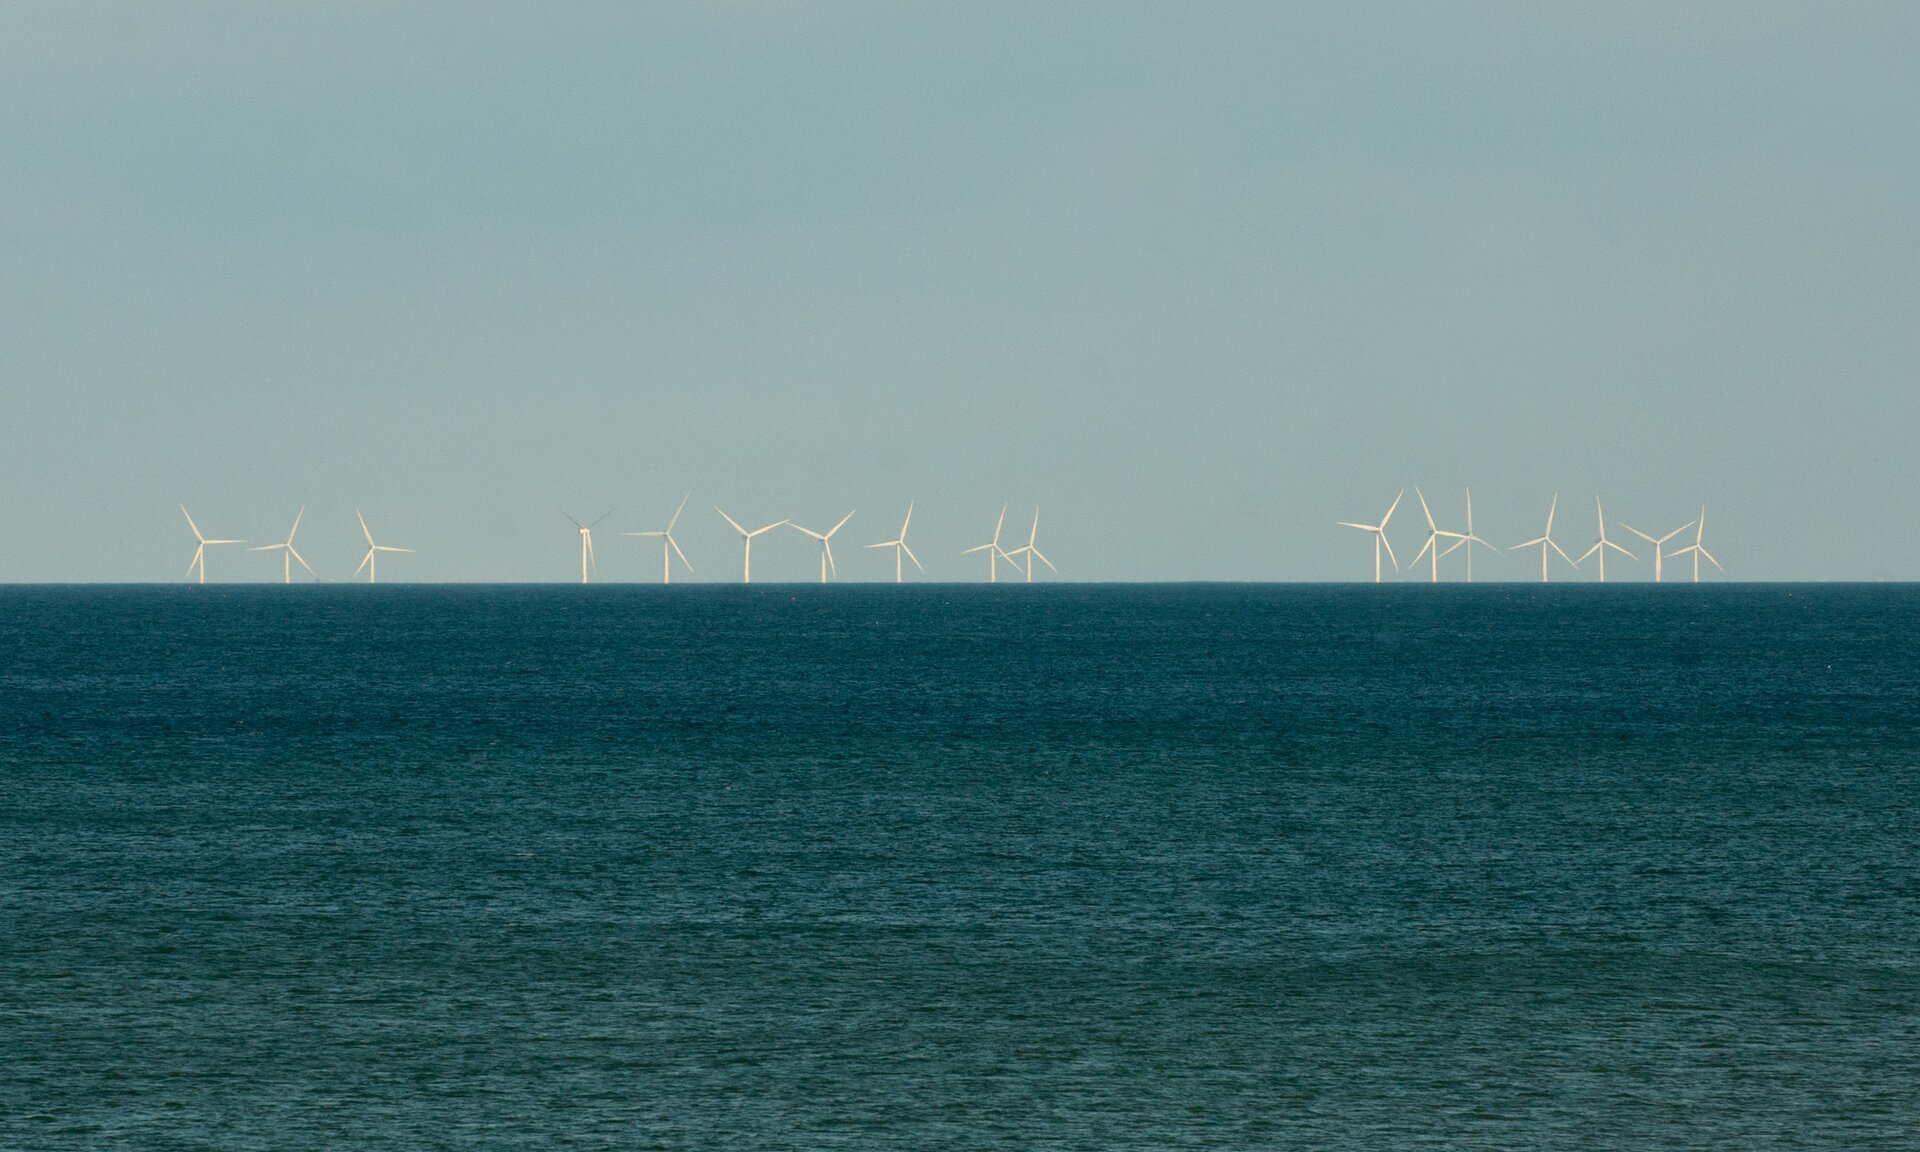 Zdjęcie przedstawia zbiornik wodny. W tle na brzegu widać liczne wiatraki elektrowni wiatrowej.  